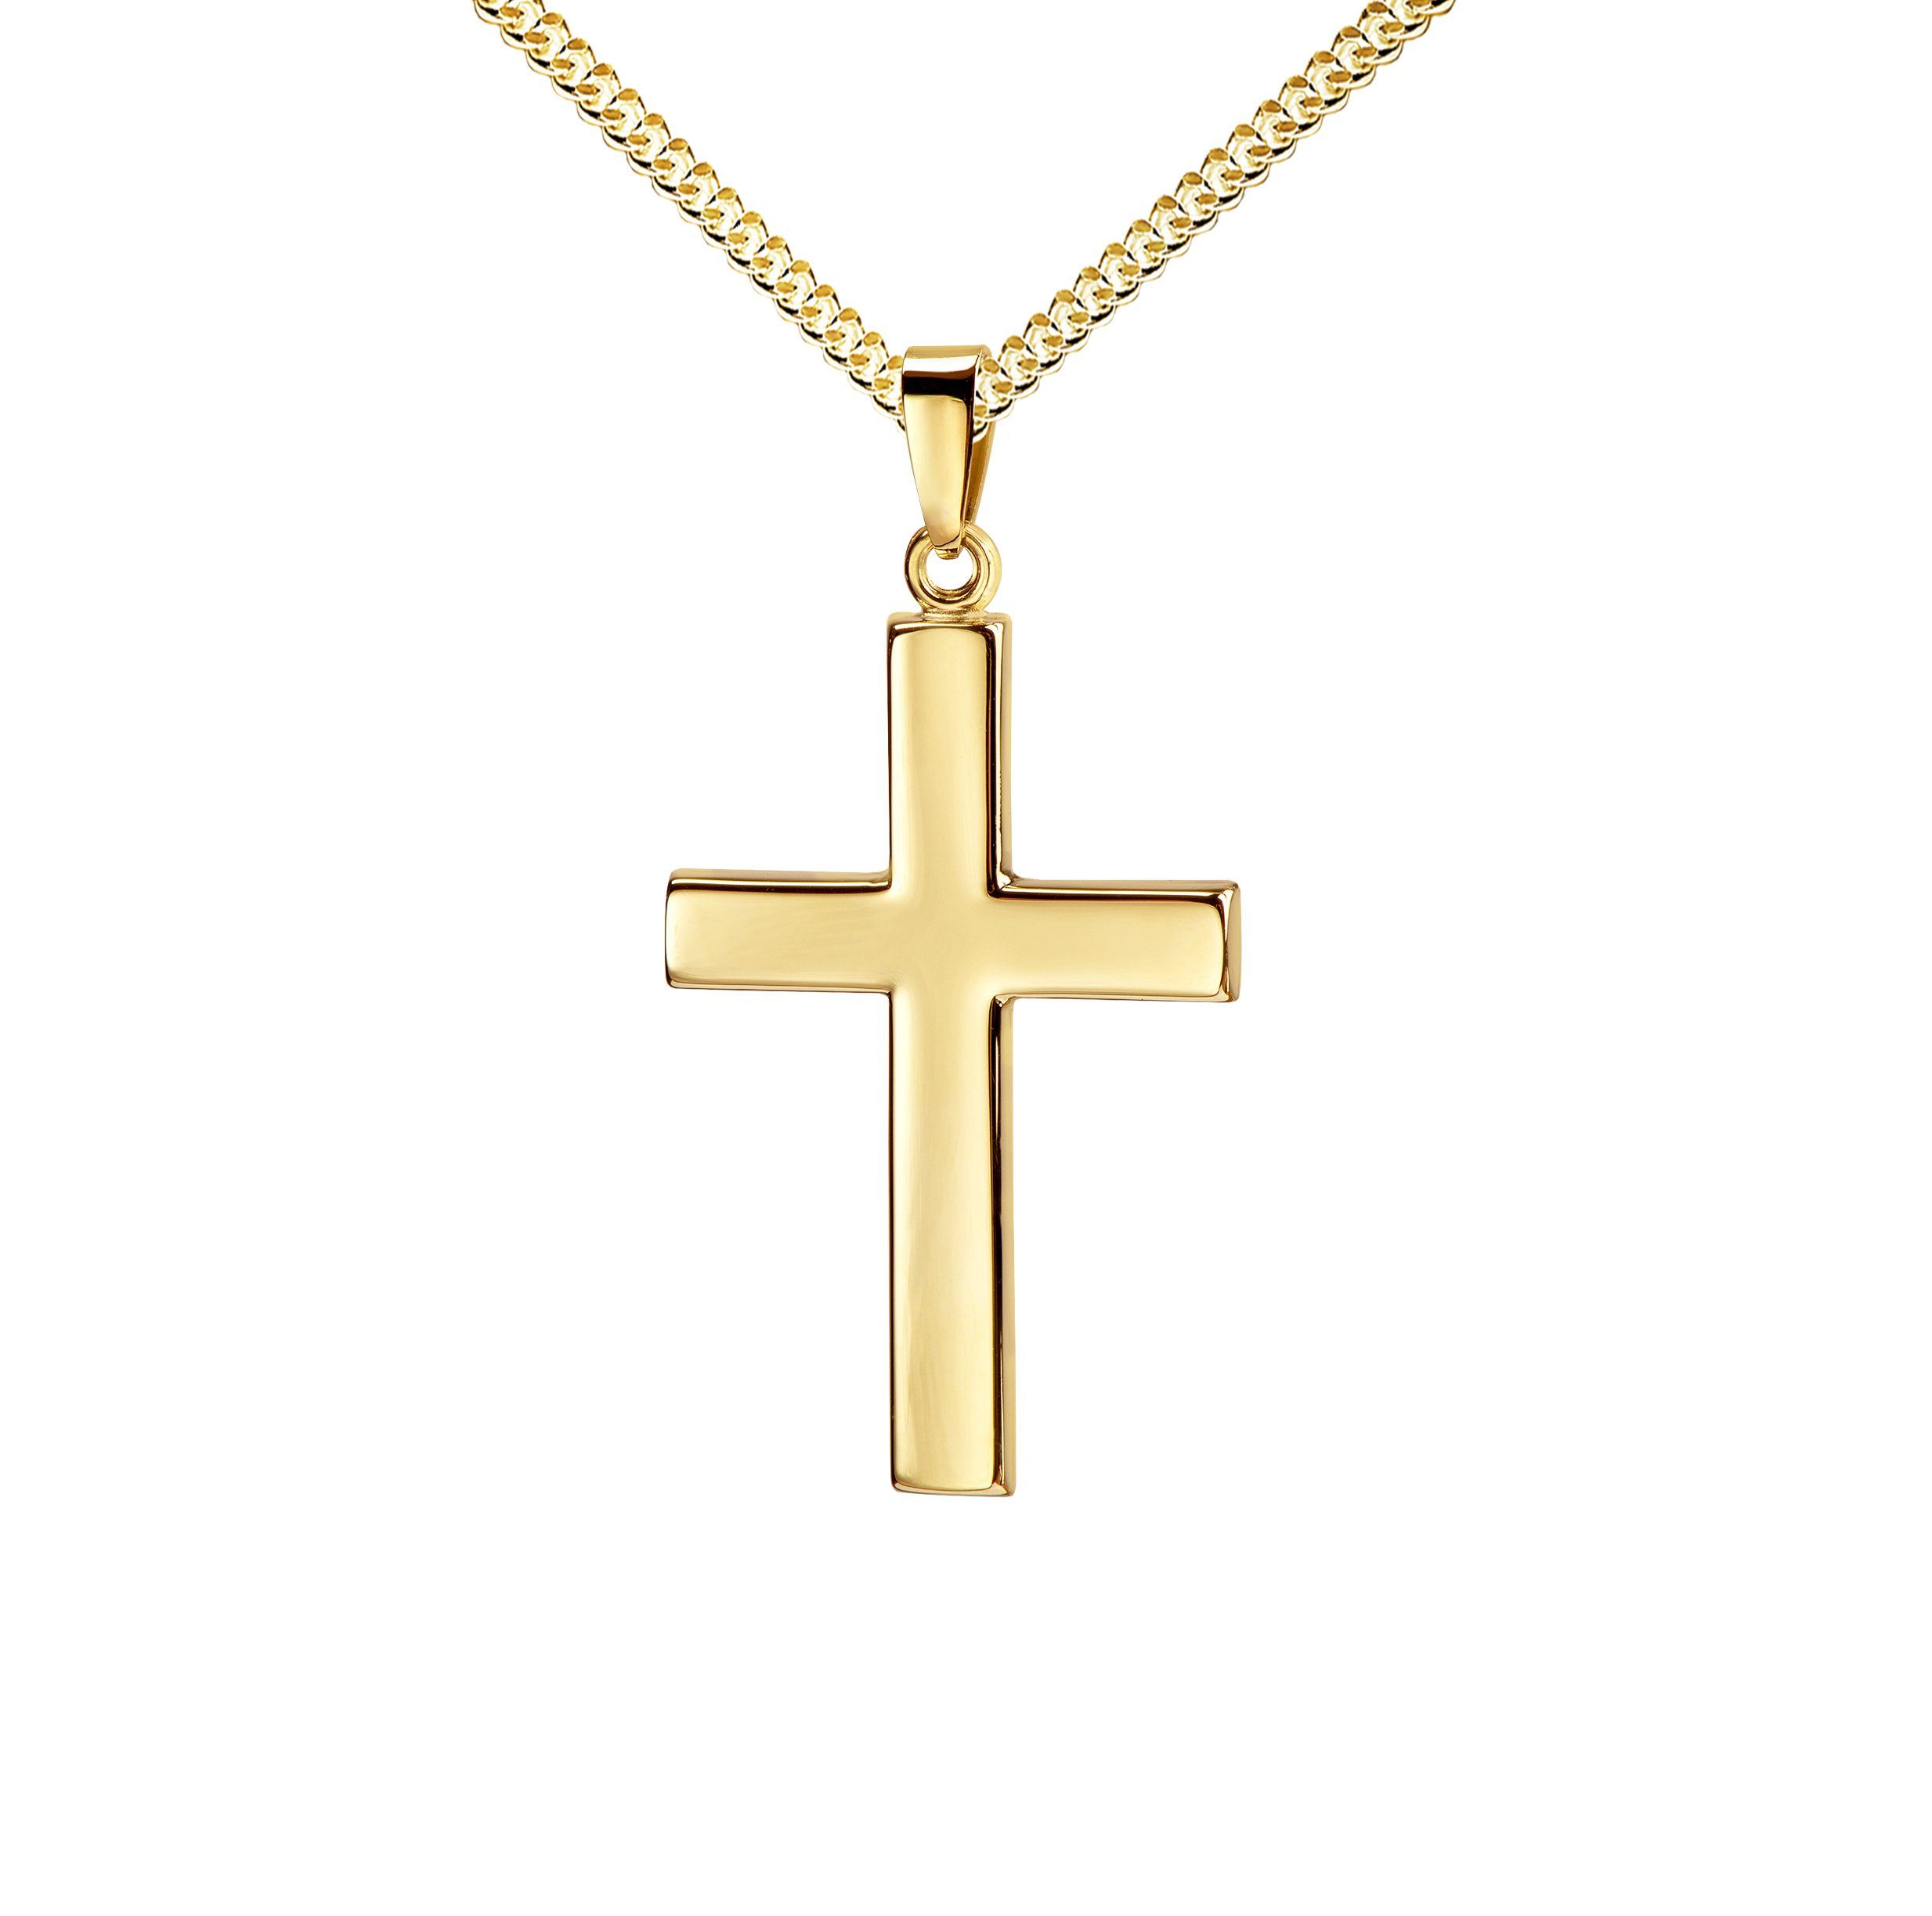 JEVELION Kreuzkette großer Kreuzanhänger 585 Gold - Made in Germany (Goldkreuz, für Damen und Herren), Mit Kette vergoldet- Länge wählbar 36 - 70 cm oder ohne Kette.